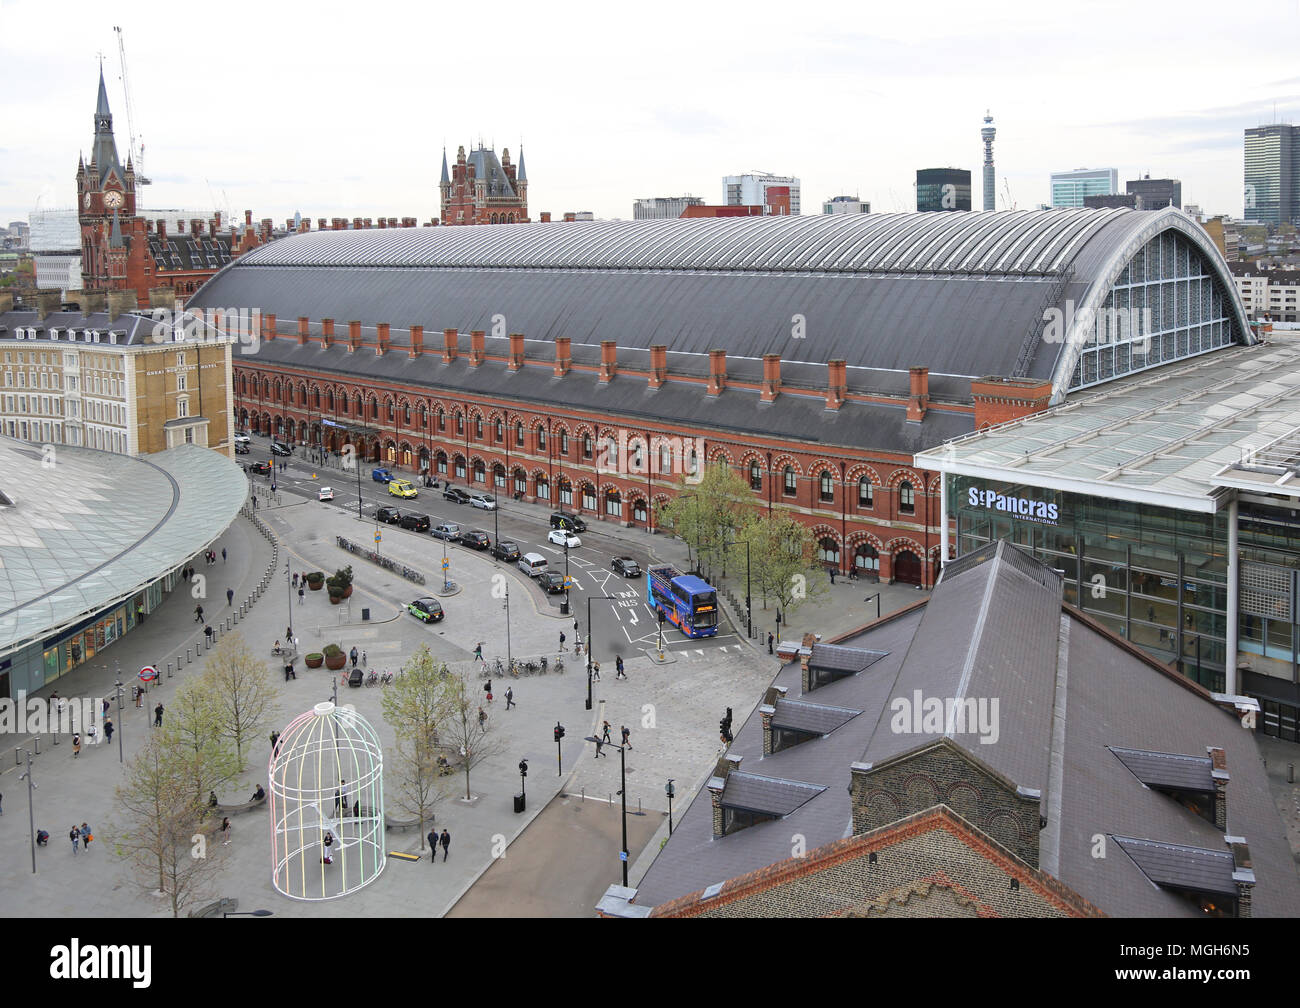 Hohe Aussicht auf die St. Pancras Station, London. Zeigt alte Station (Mitte) neue Erweiterung (rechts) & neue Kings Cross Bahnhofshalle und Piazza (Center & Links) Stockfoto